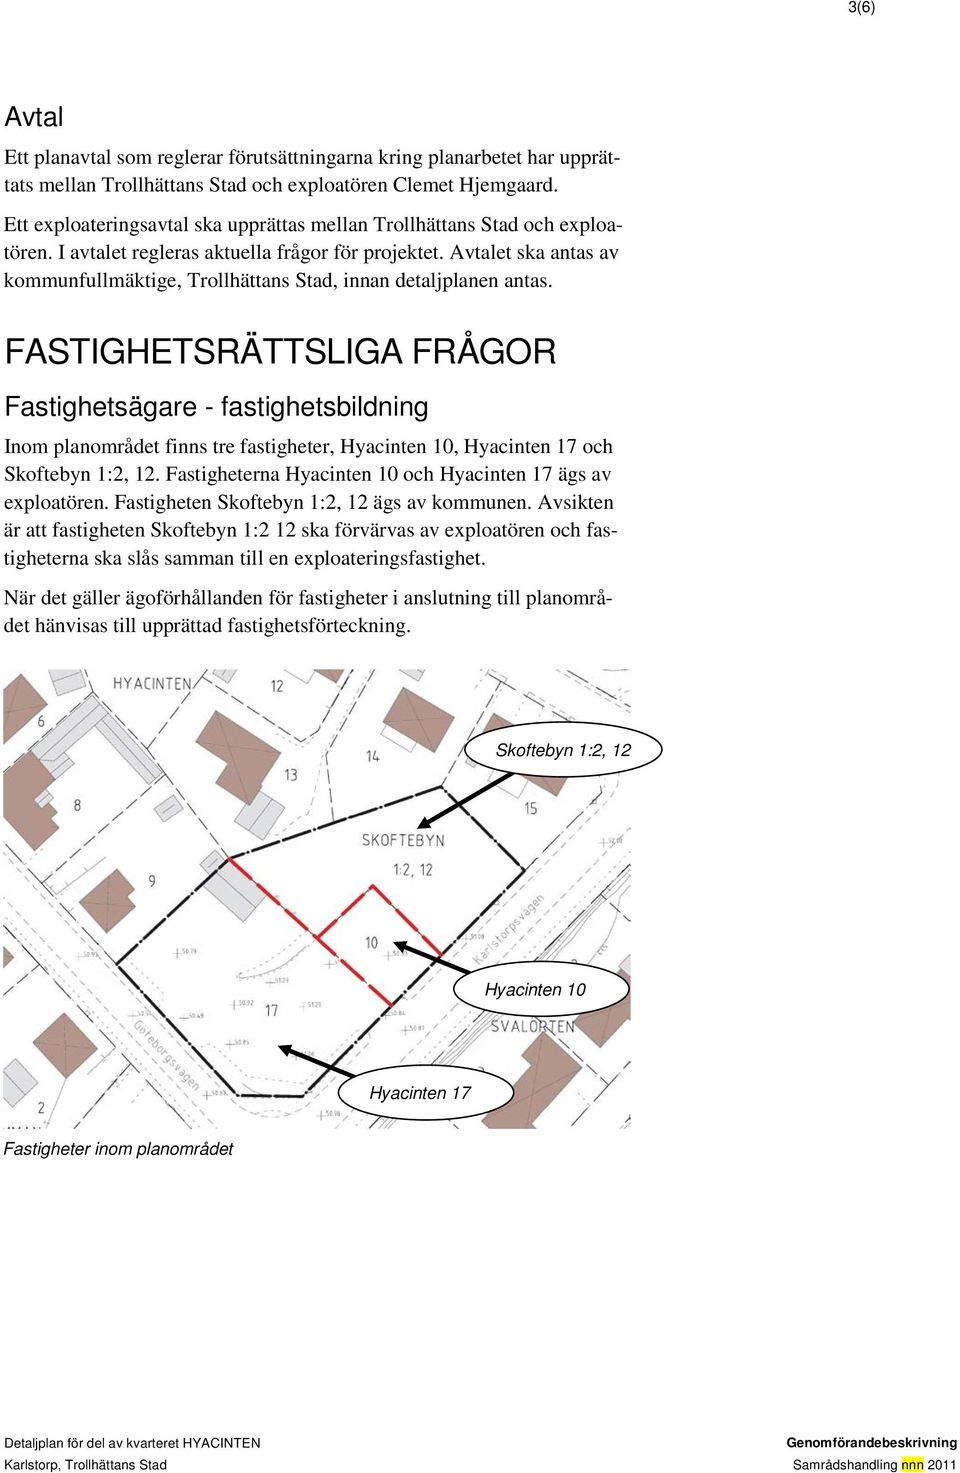 Avtalet ska antas av kommunfullmäktige, Trollhättans Stad, innan detaljplanen antas.